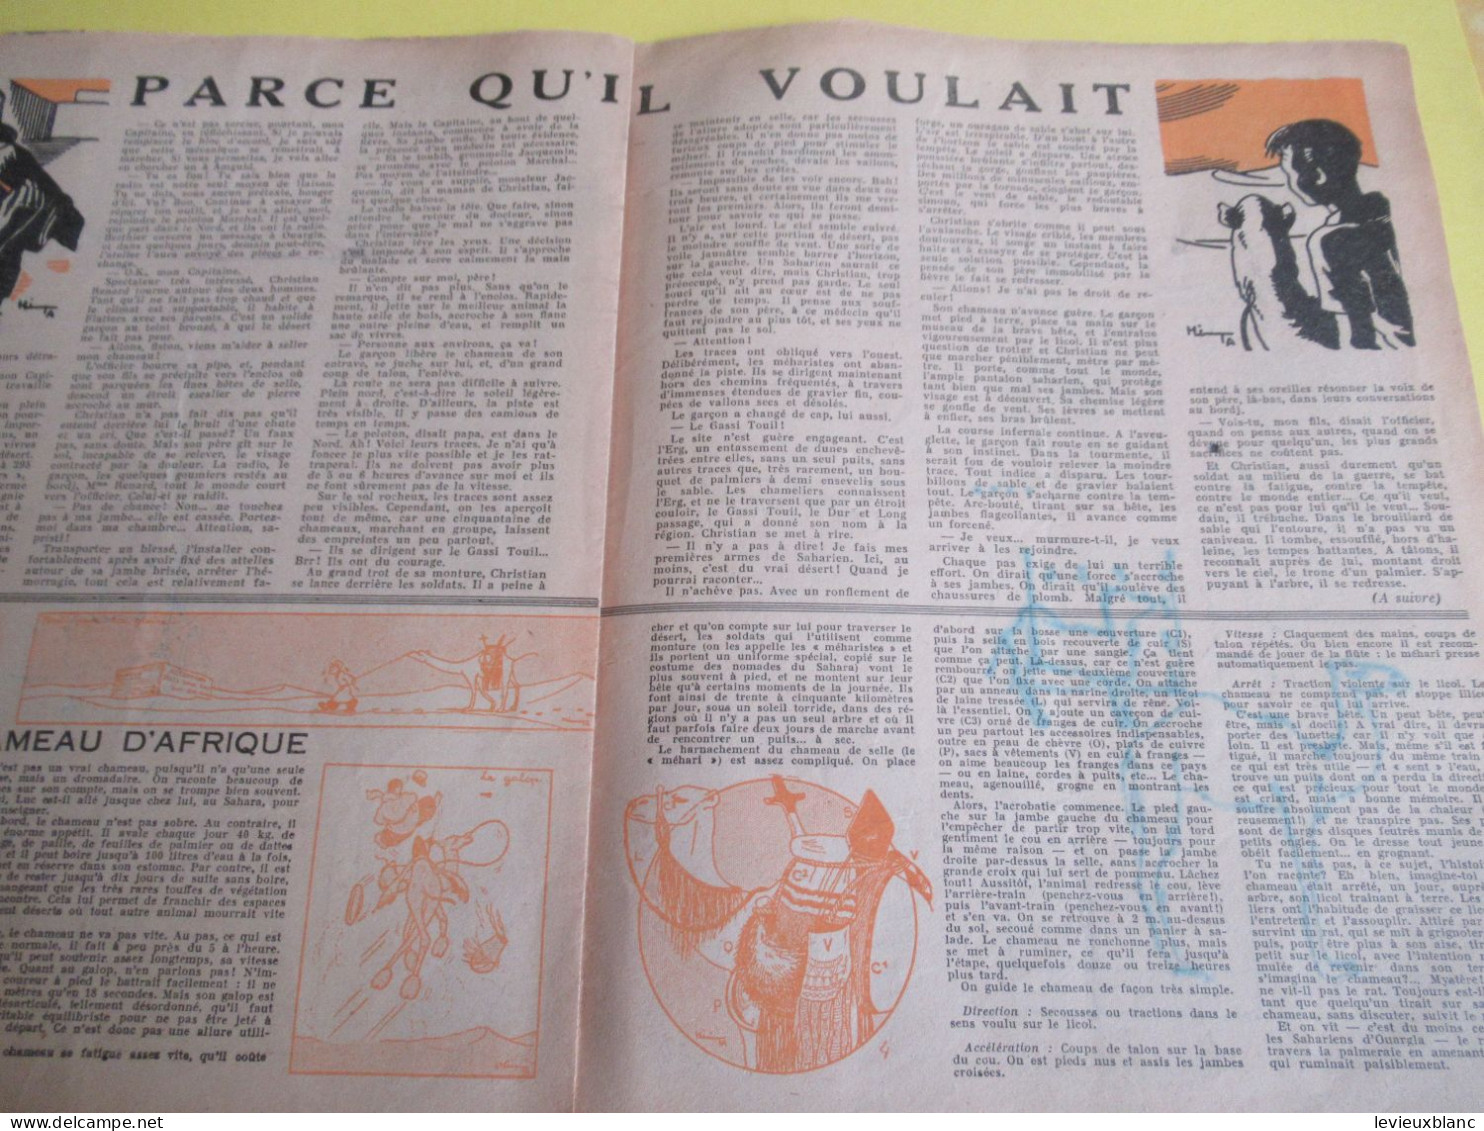 SCOUT De France/LOUVETEAU/Revue Bimensuelle/ N° 1- 2-3- 4- 5-7- 9-10- 11-12-13-14-19-20/1949-1950    VJ146 - Movimiento Scout